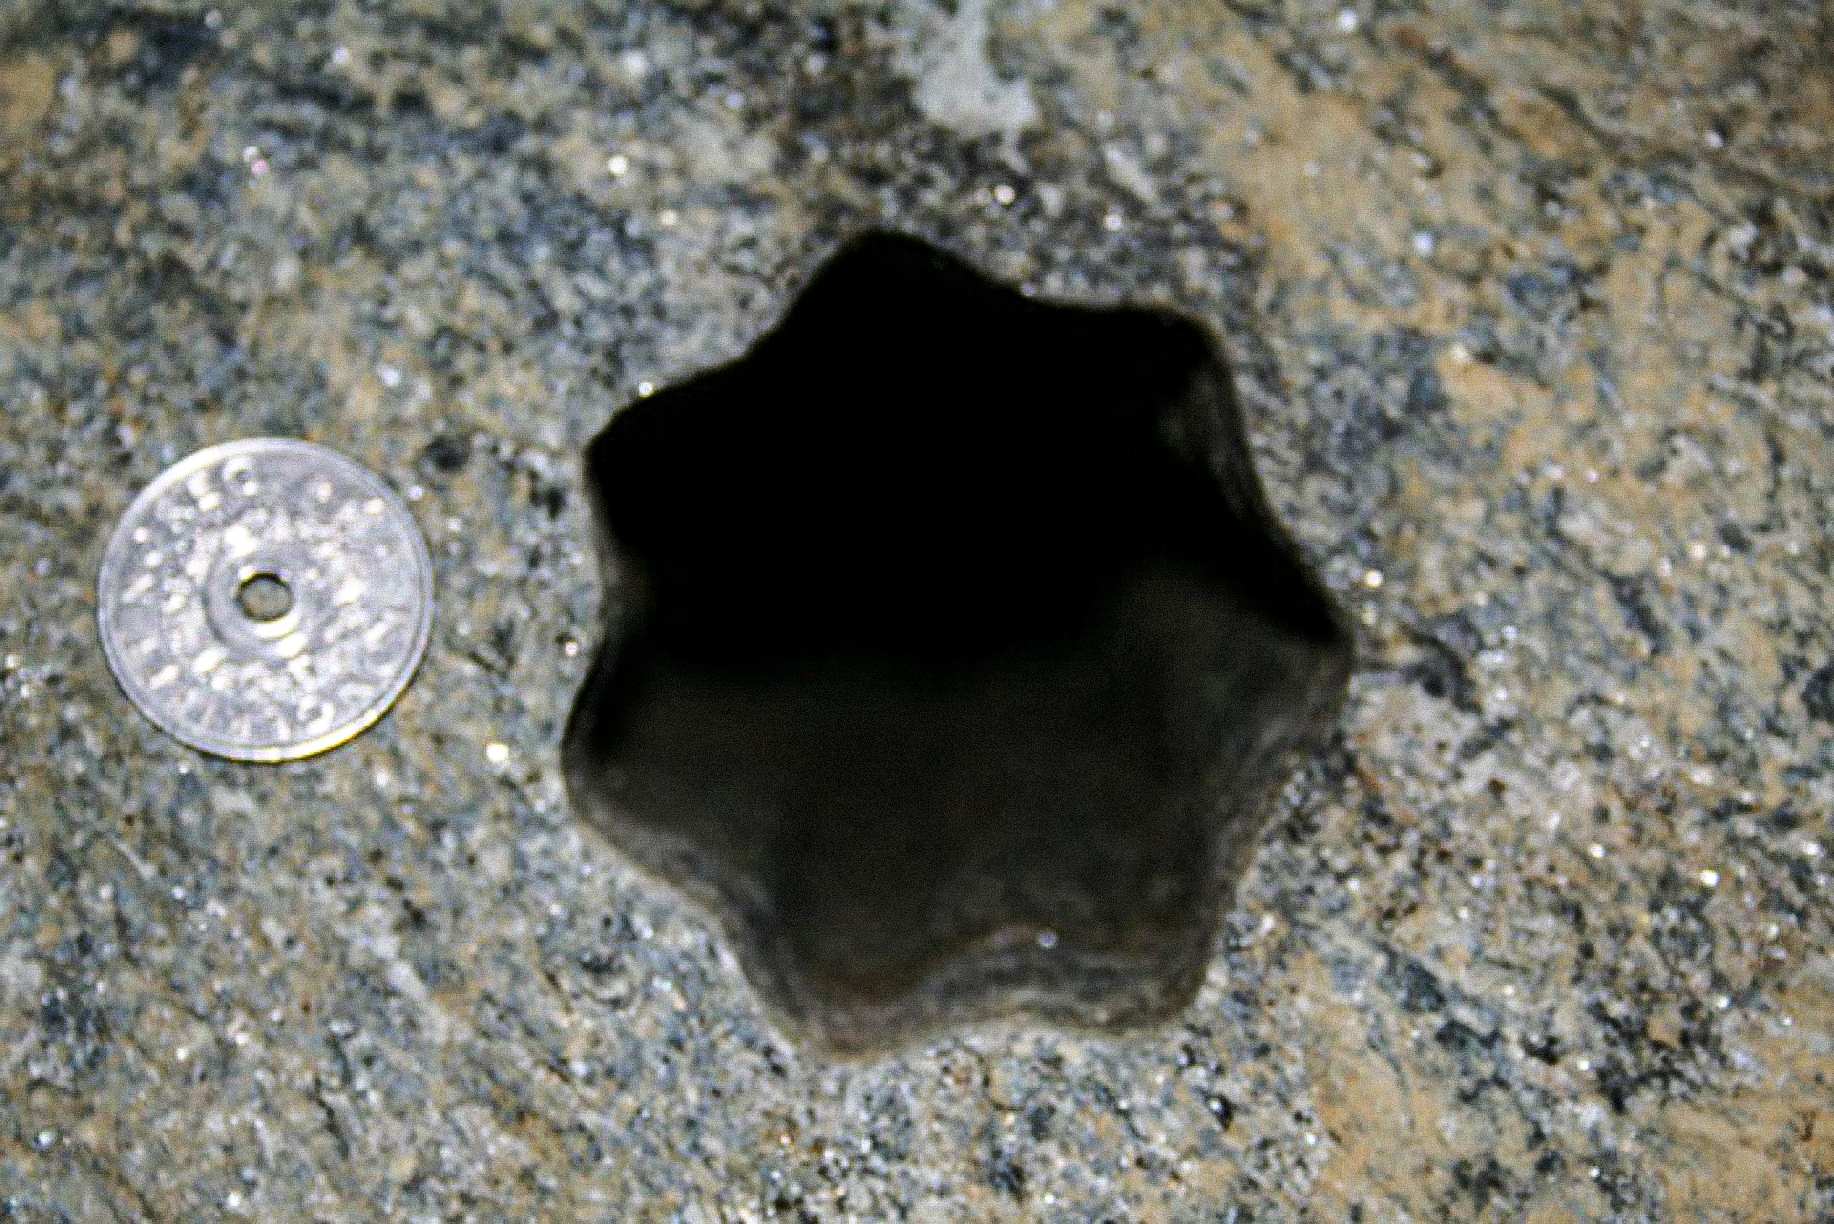 Detta stjärnformade hål (med sju sidor) hittades av entreprenörer fredagen den 30 november 2007 i Volda, Norge. Det norska 5-kronorsmyntet är 25 mm i diameter. Hålet är ca 65 - 70 mm i diameter.